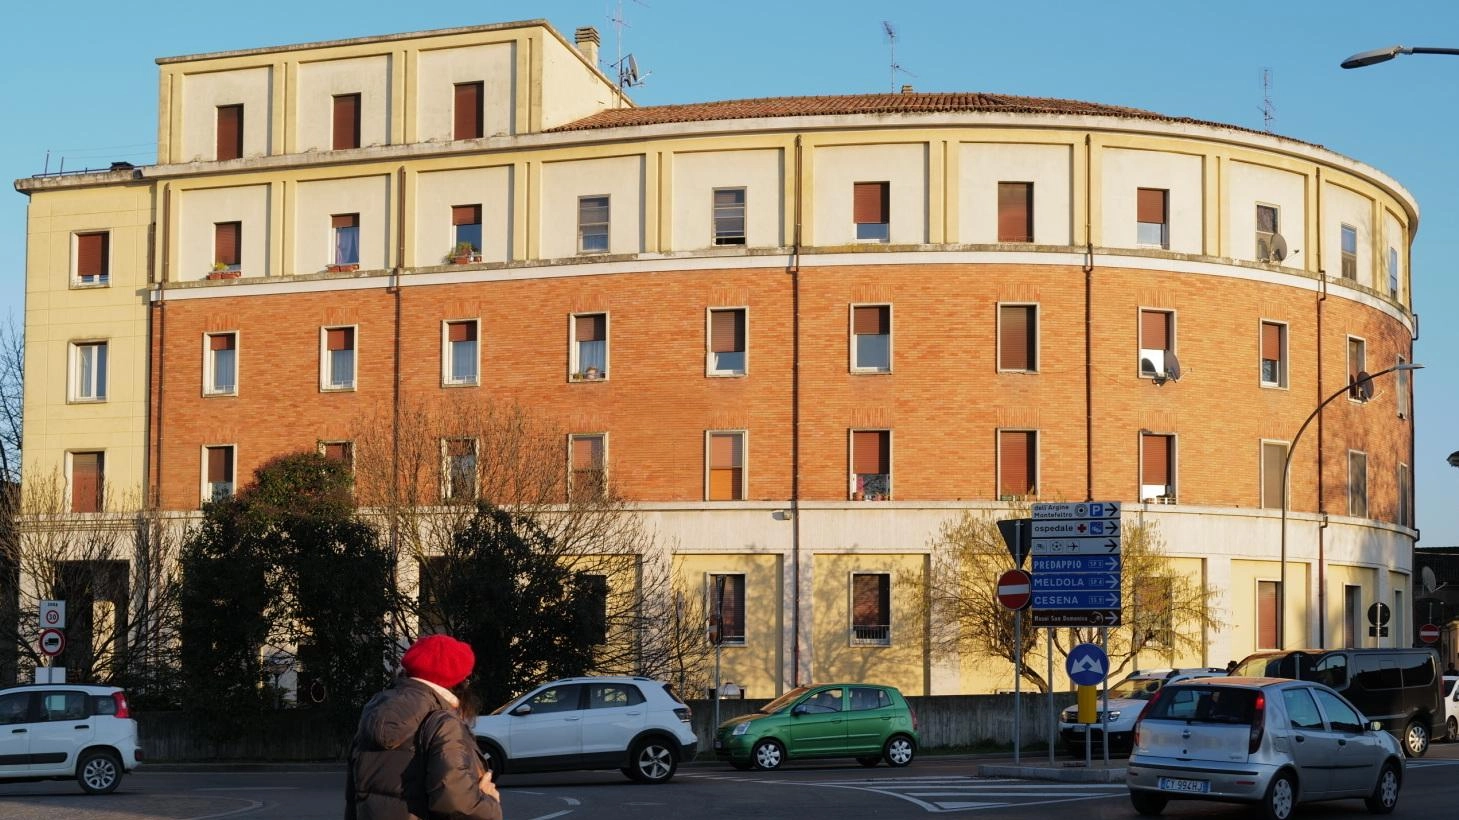 Il Comune di Forlì amplia l'offerta di alloggi popolari con 42 nuove abitazioni di edilizia residenziale pubblica, rinnovate per garantire sicurezza e accessibilità. Ulteriori interventi di recupero in corso per rispondere alle esigenze abitative della comunità.